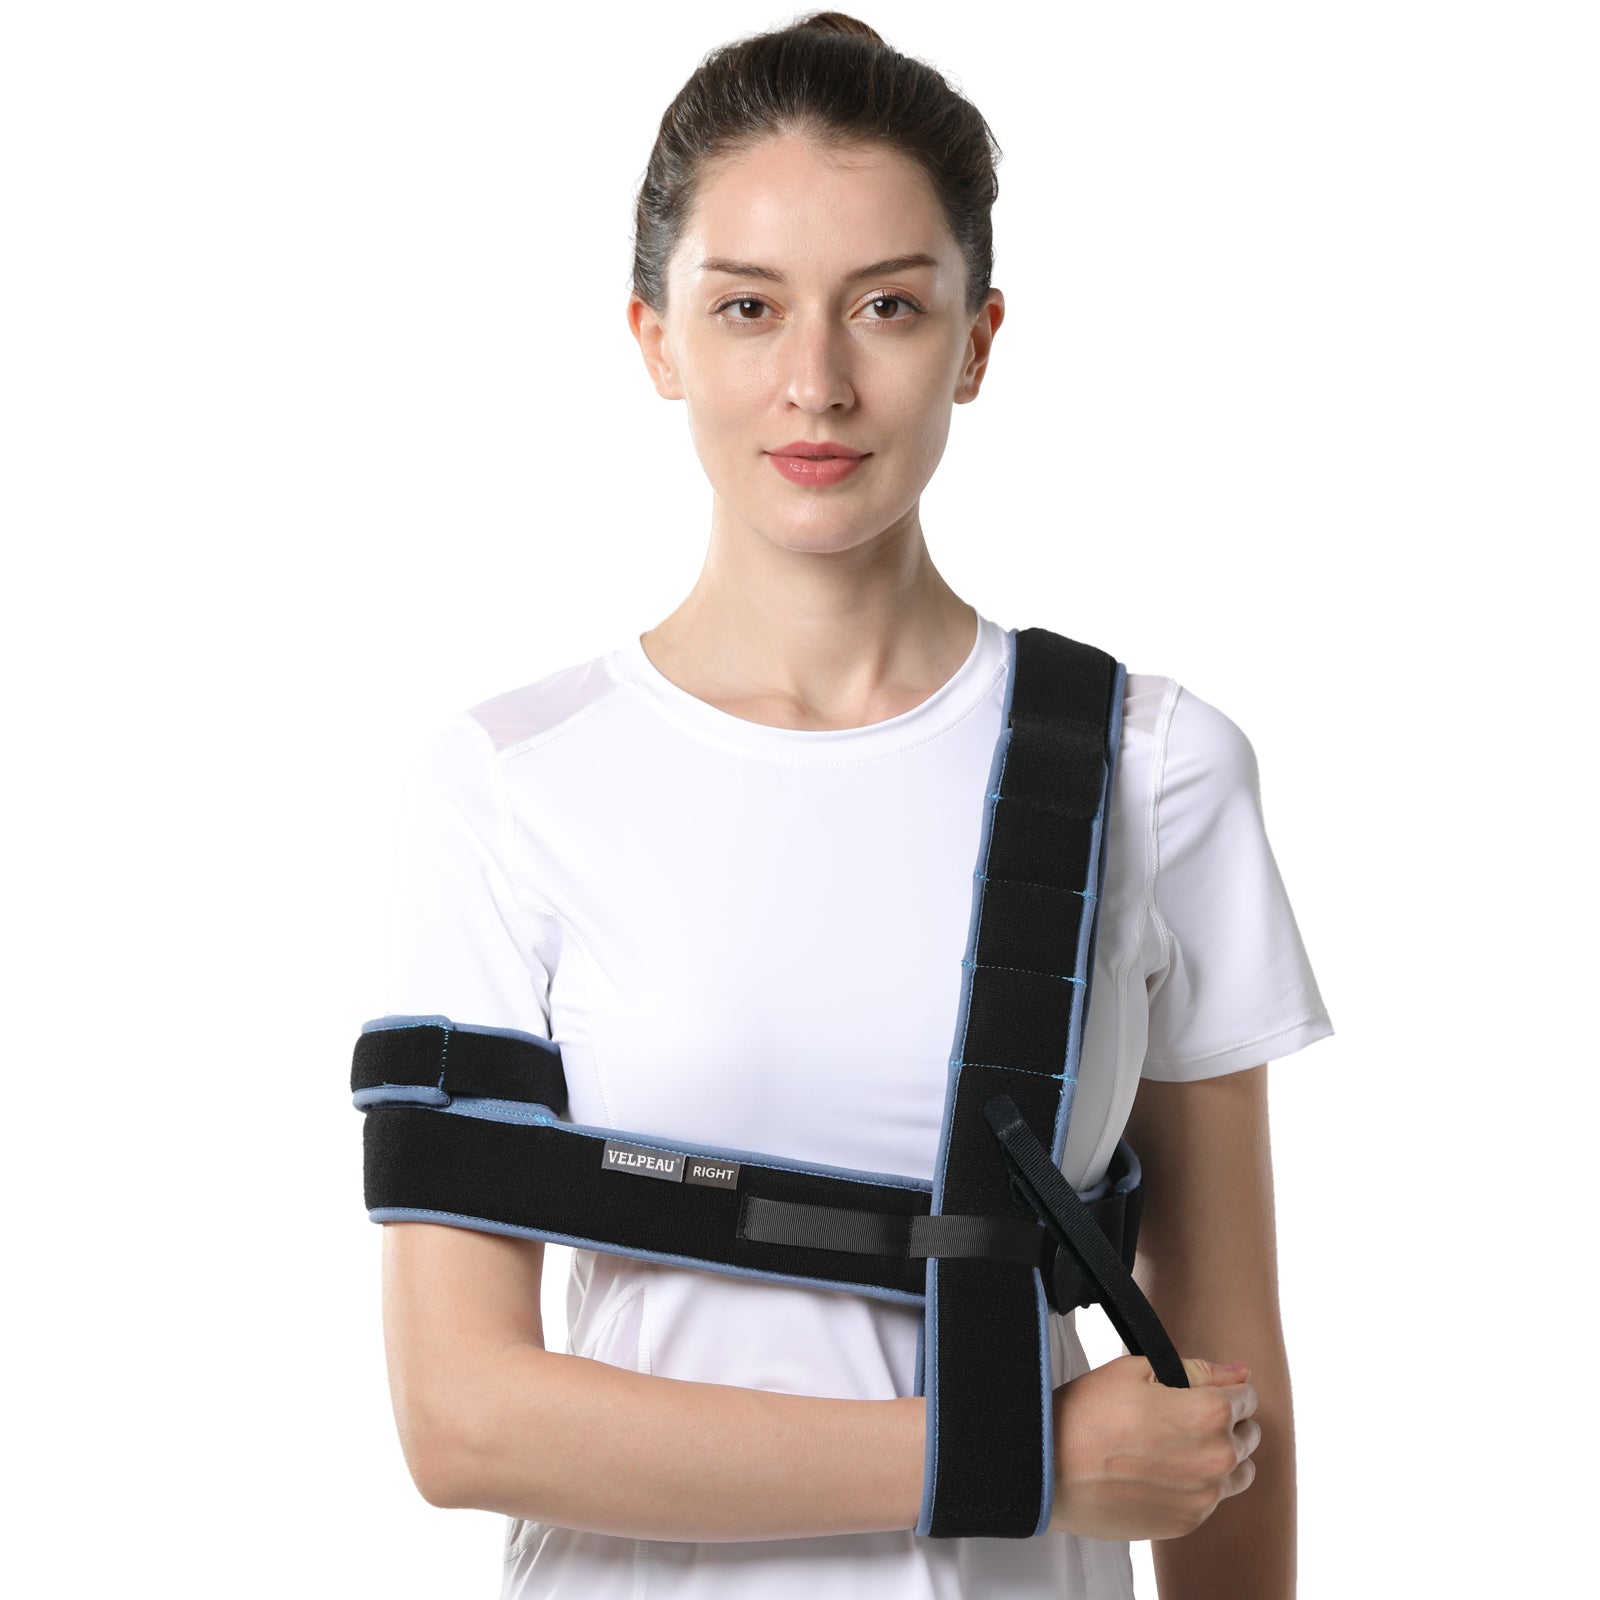 VP0308 VELPEAU Shoulder For Sling Elbow Injury